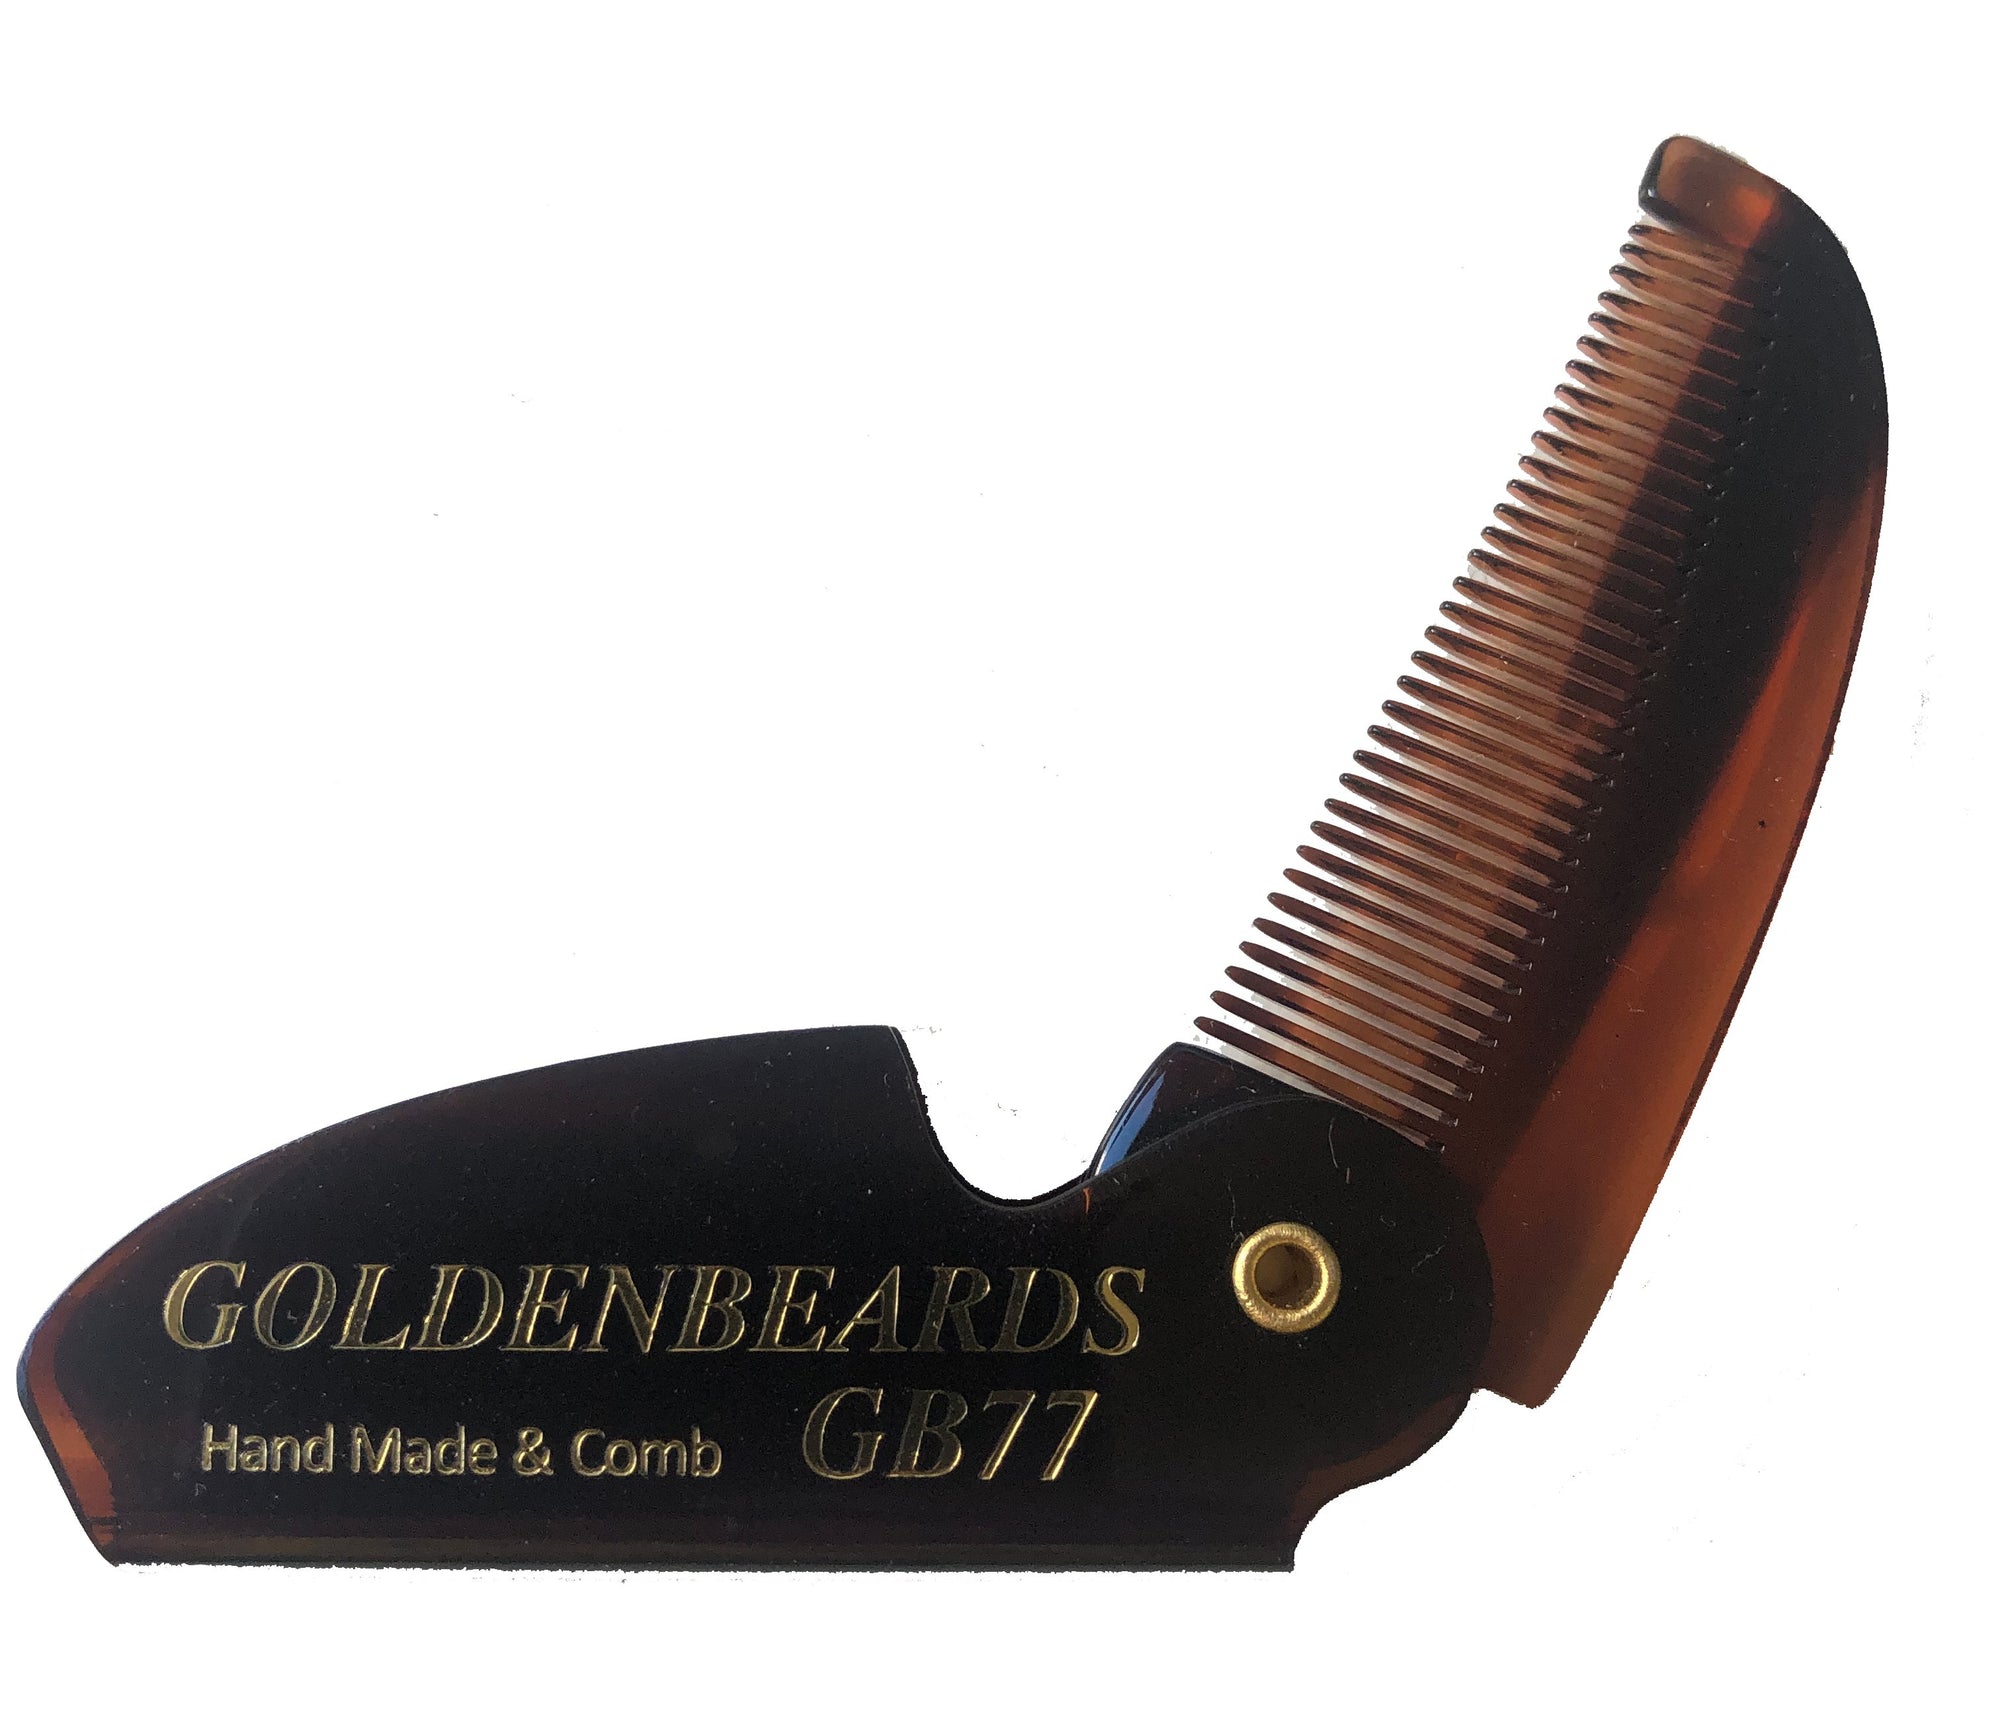 Golden Beards GB 77T Folding Beard & Mustache Comb